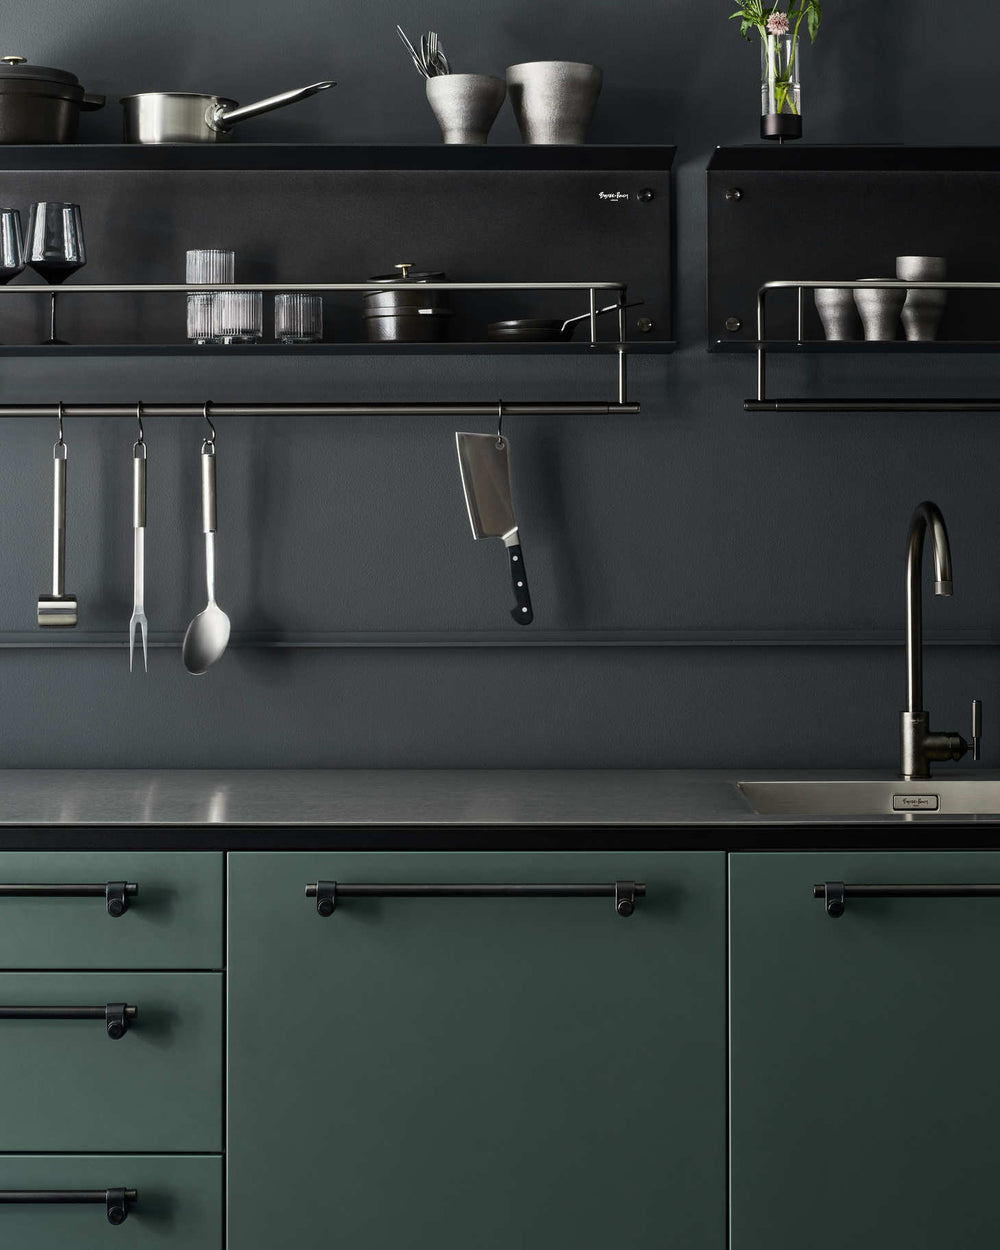 Svart hylla till köket eller badrummet i en rå design med exklusiva detaljer i gun metal. Här visas hyllan monterad i ett kök.